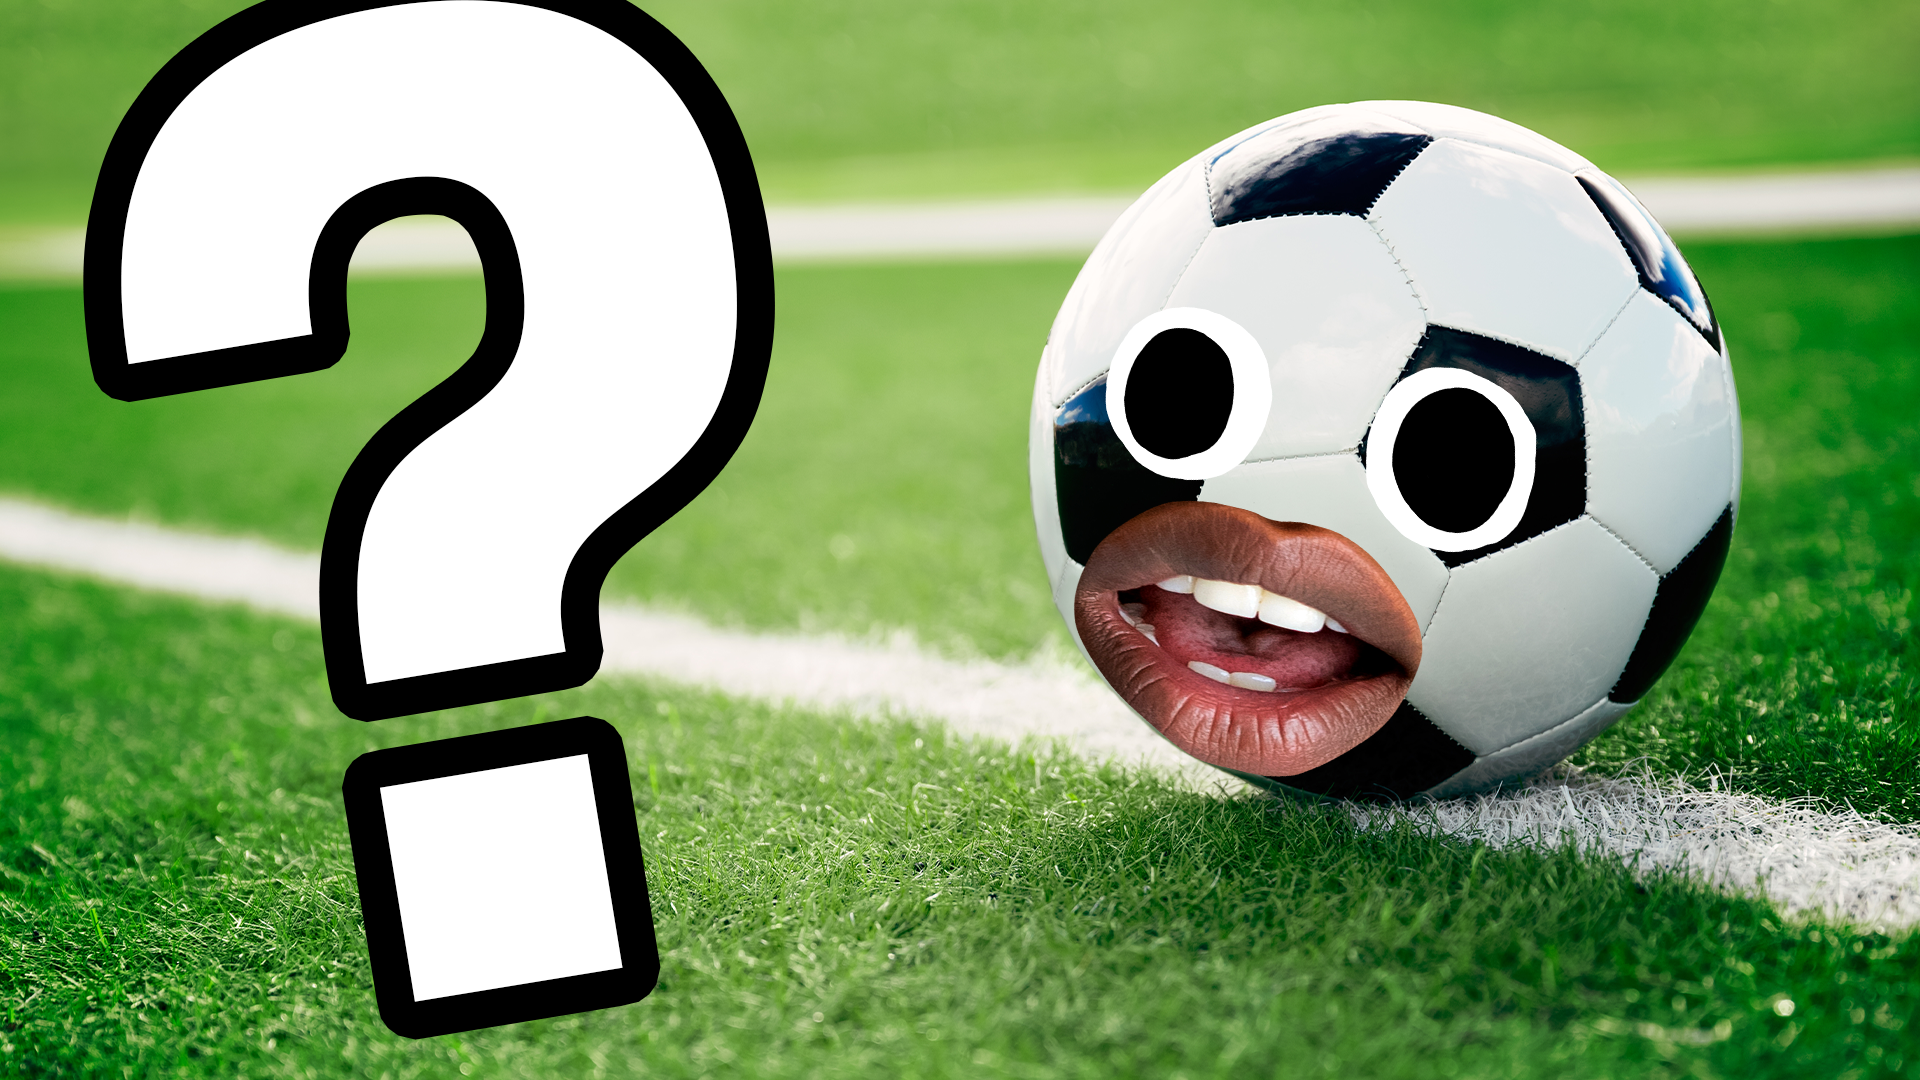 Quiz sobre futebol ⚽ (nível fácil)